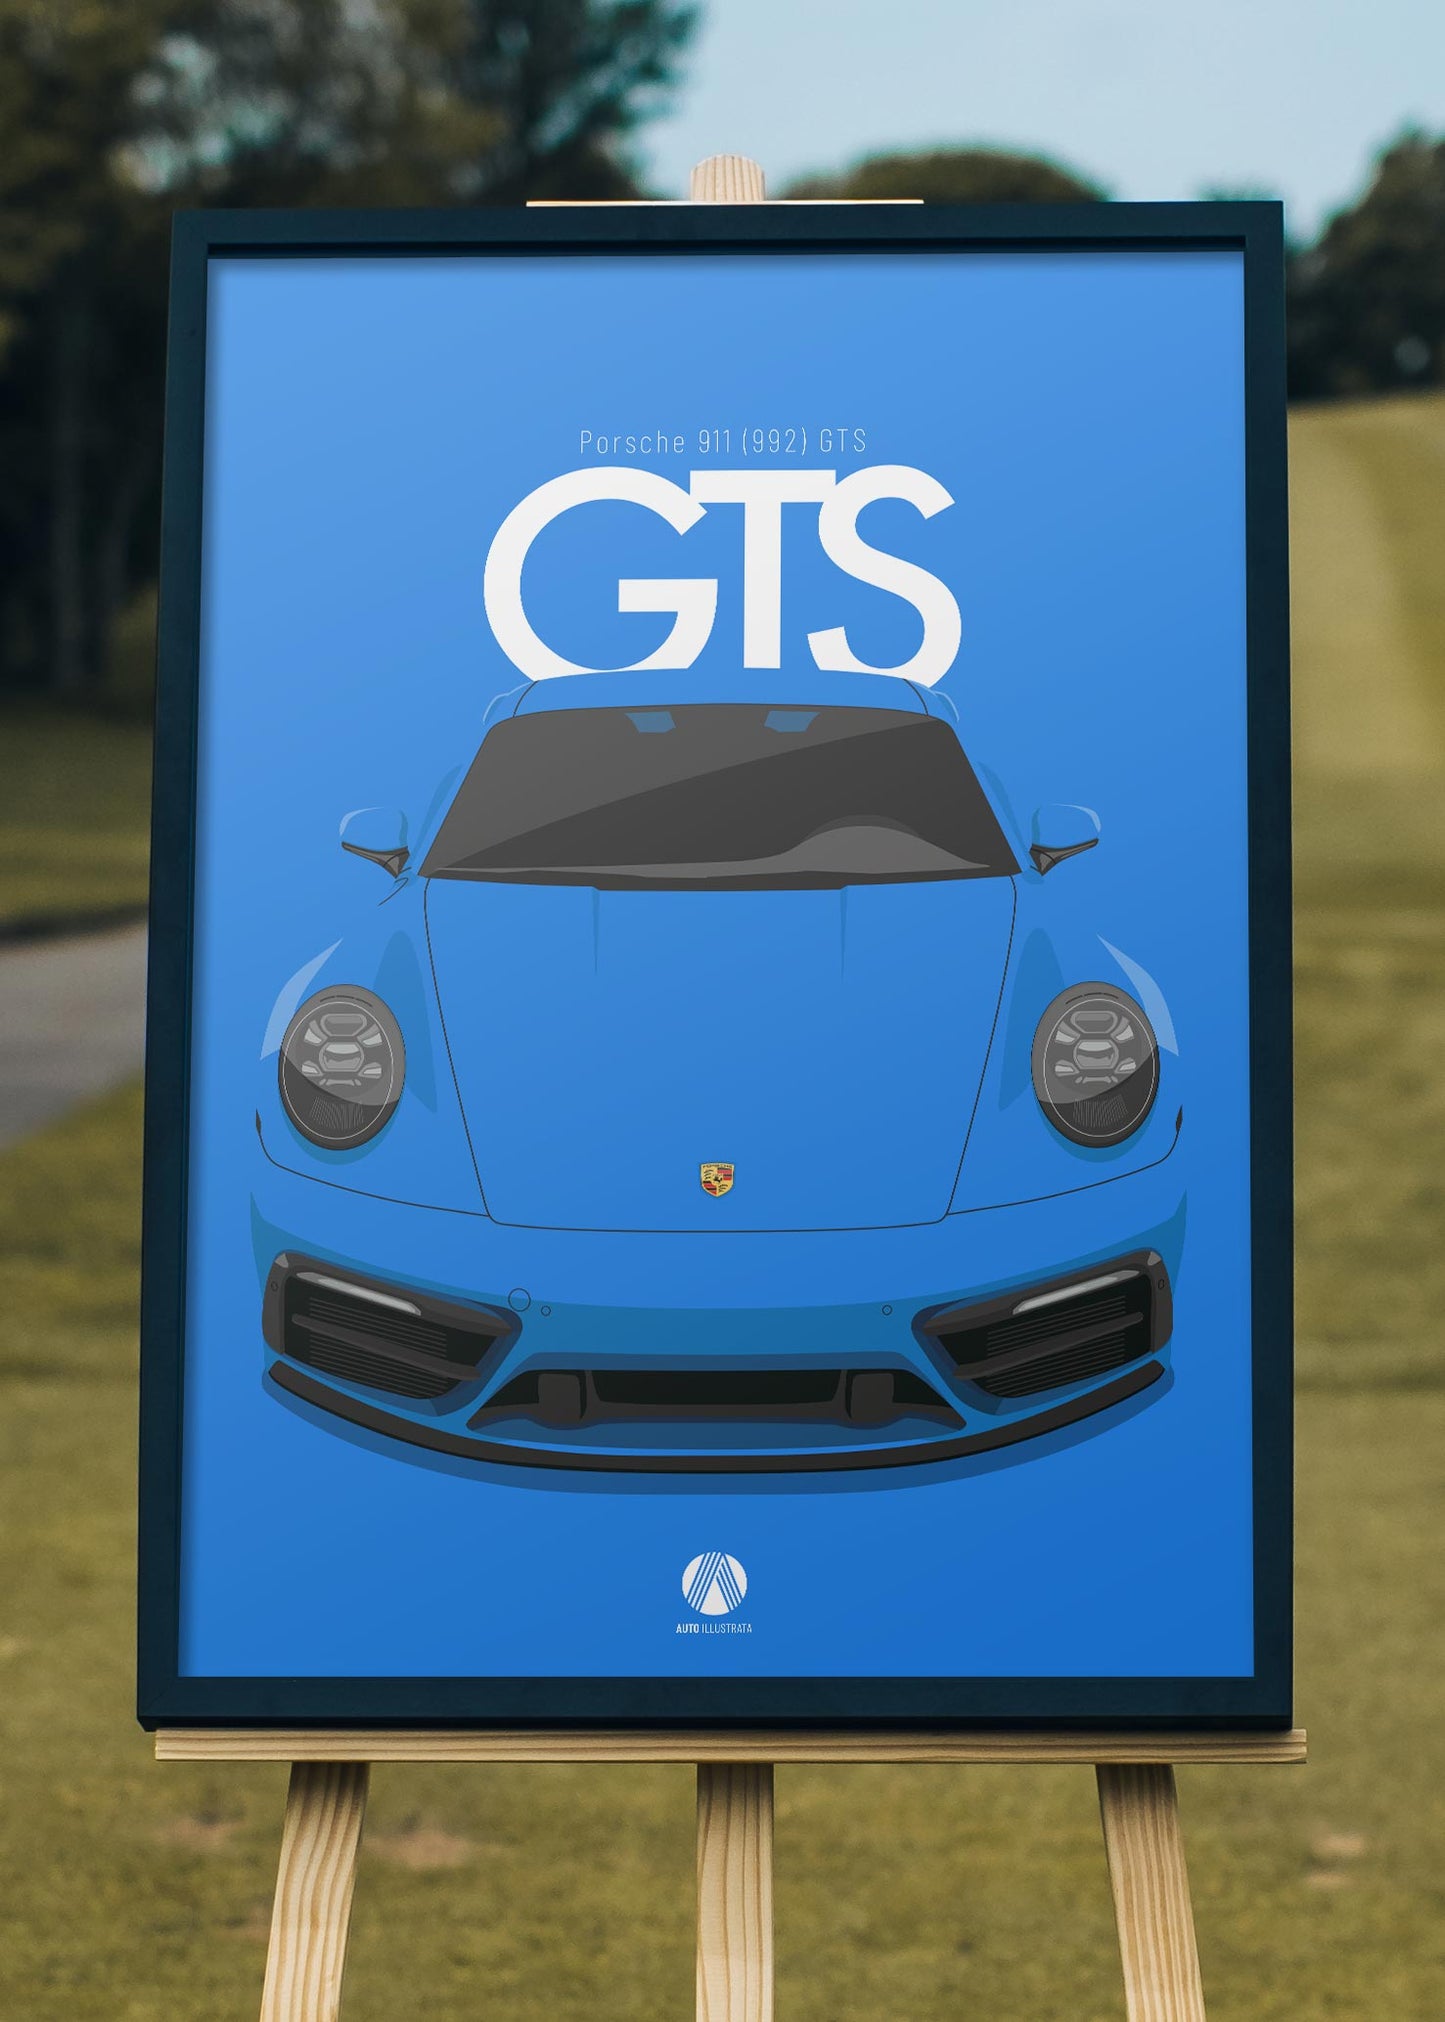 2021 Porsche 911 (992) GTS Shark Blue - poster print